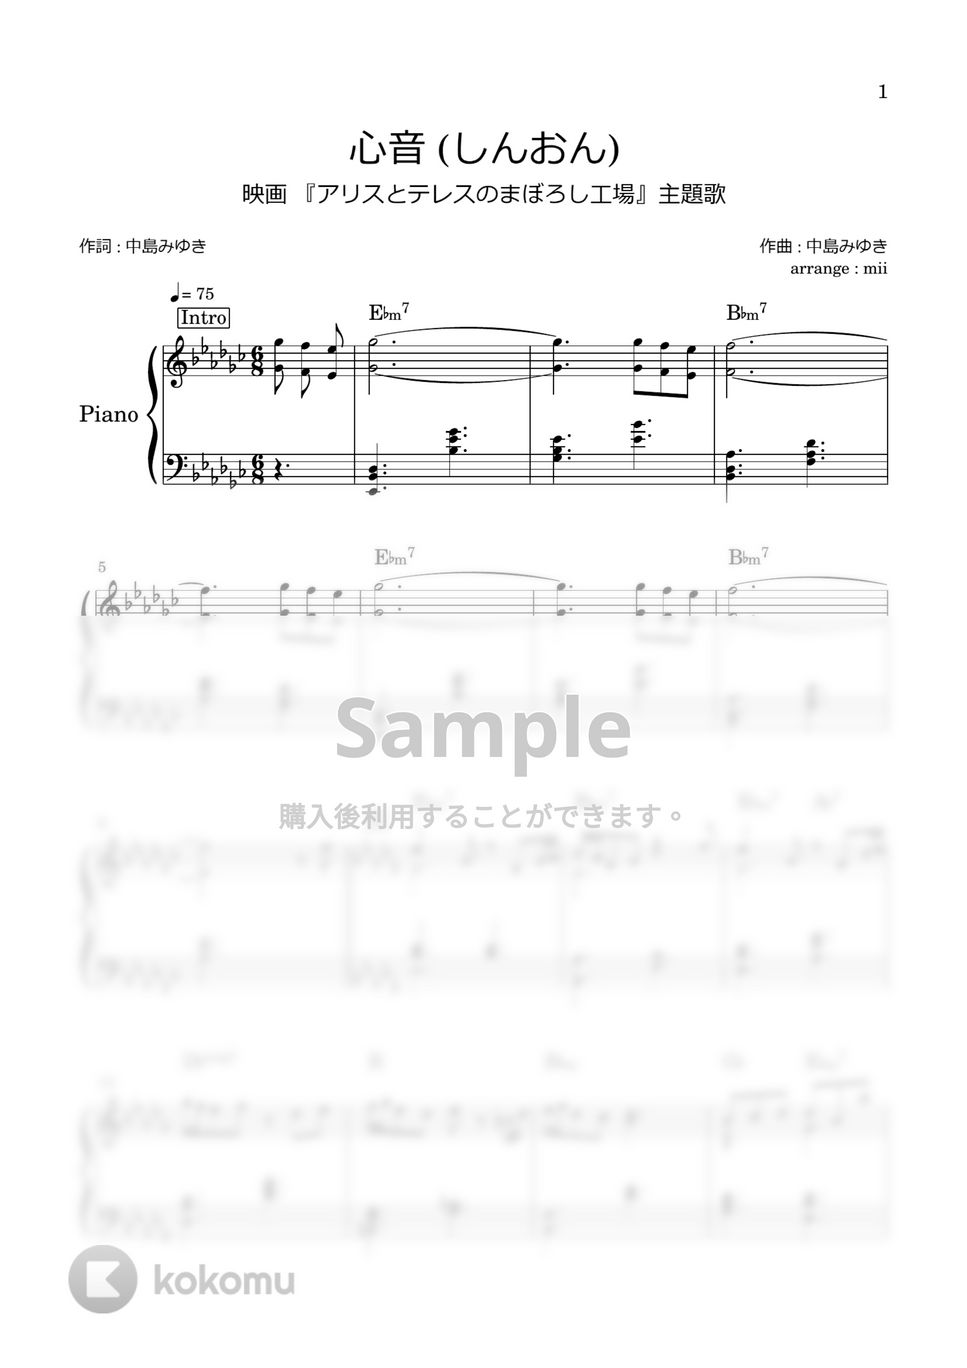 中島みゆき - 心音 (しんおん) (アリスとテレスのまぼろし工場 主題歌) by miiの楽譜棚